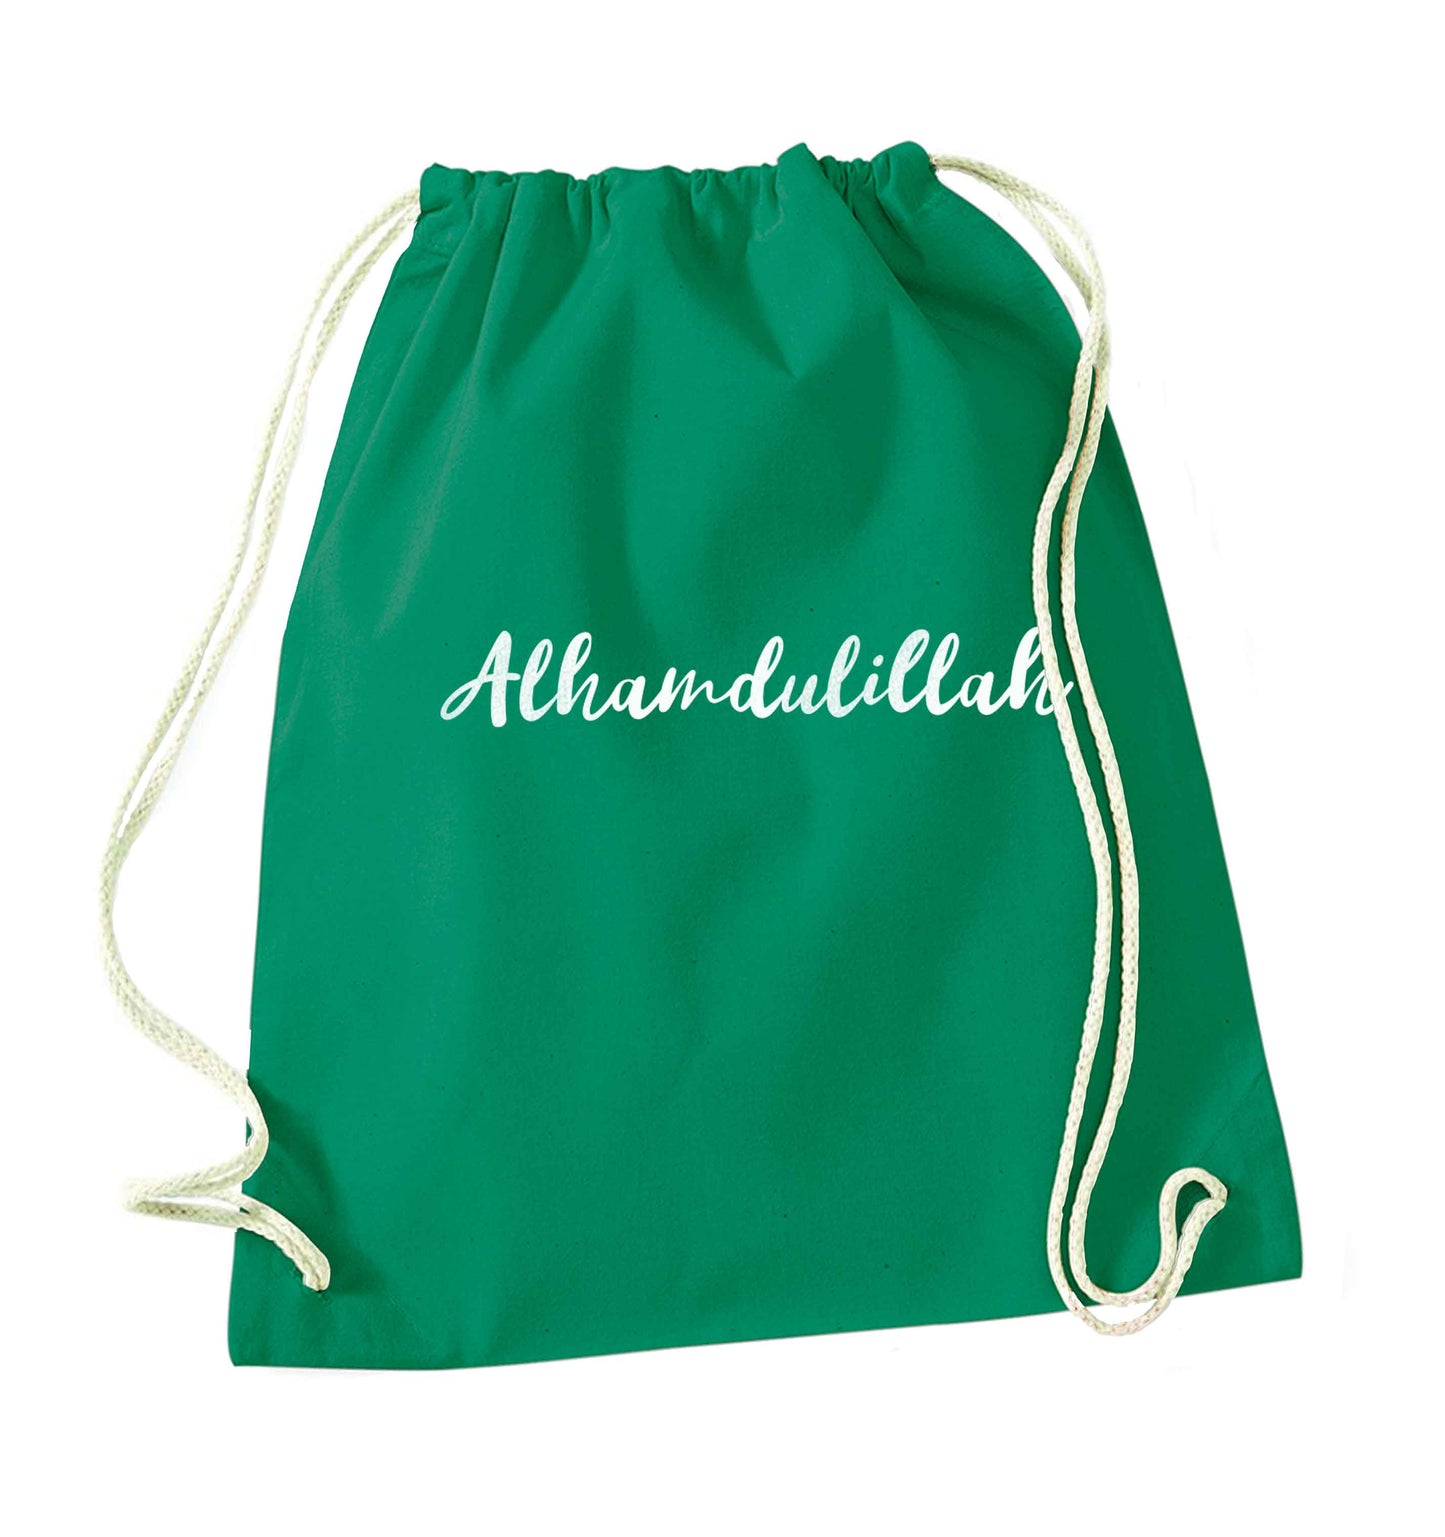 alhamdulillah green drawstring bag